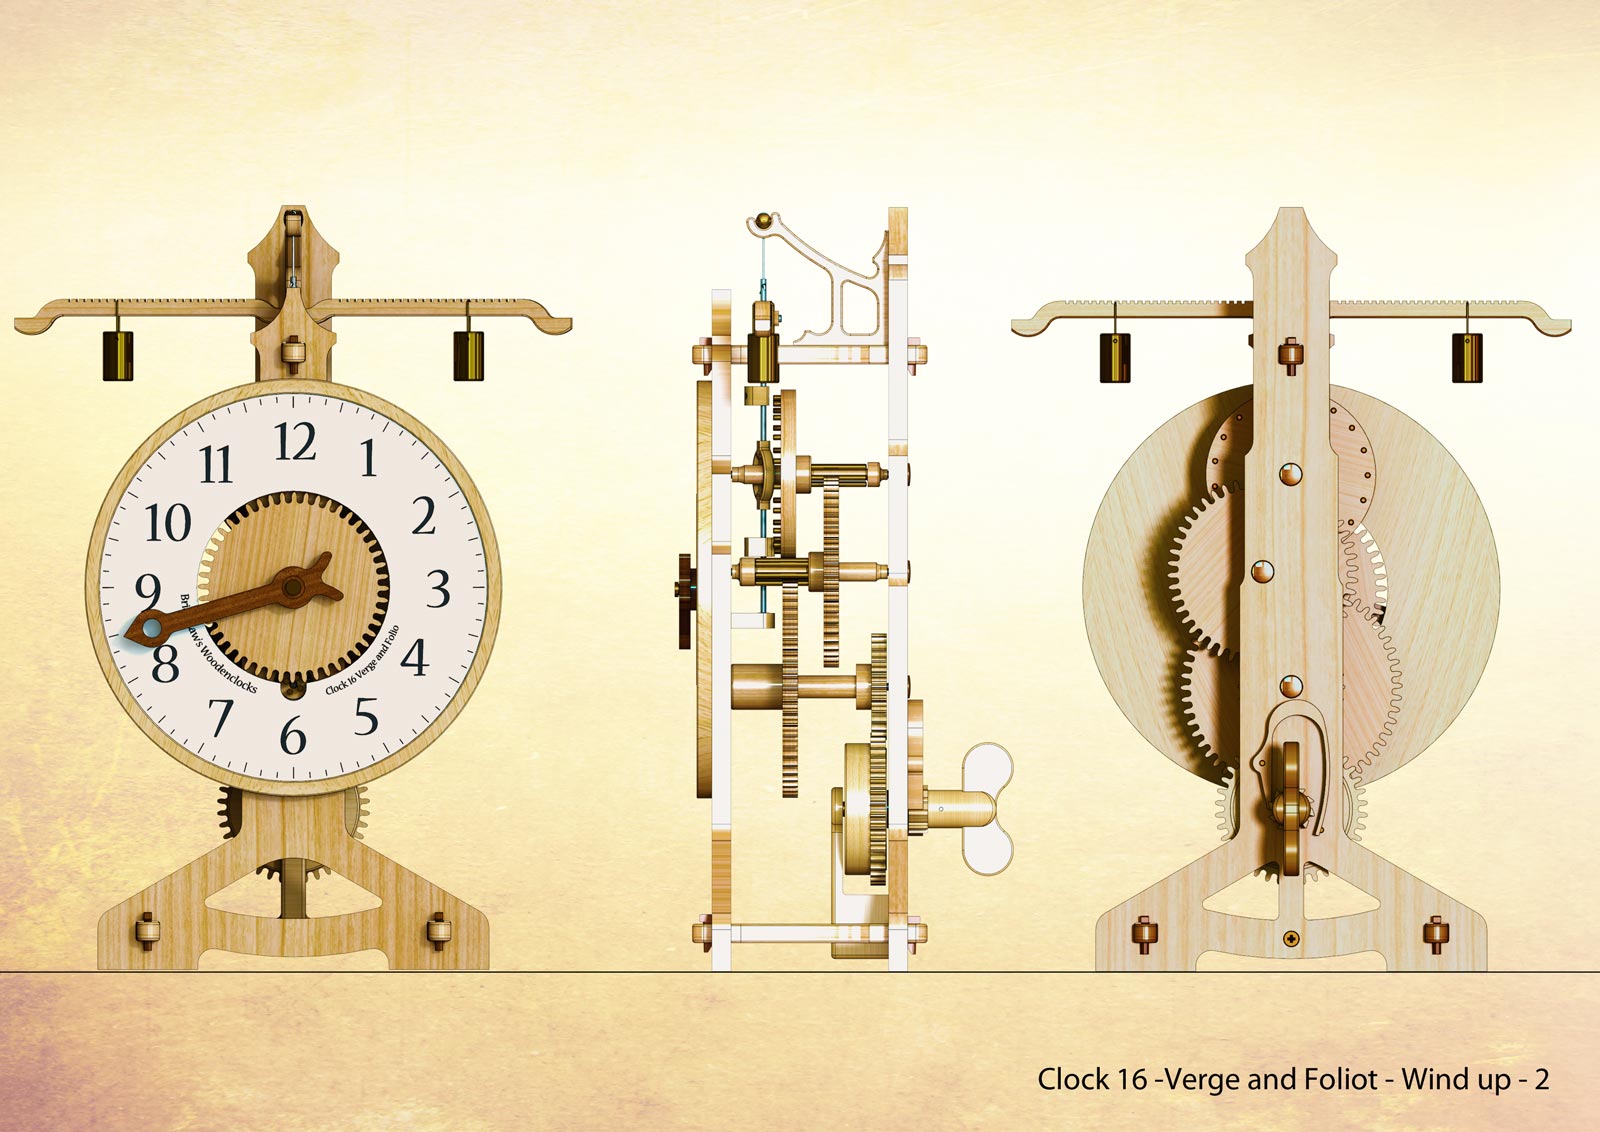 Биология часы 2023. Часики / Clock (2023). Клок 16. Gw16 часы. Механизм внутри часов под названием " Verge and Foliot " контролирует часы.